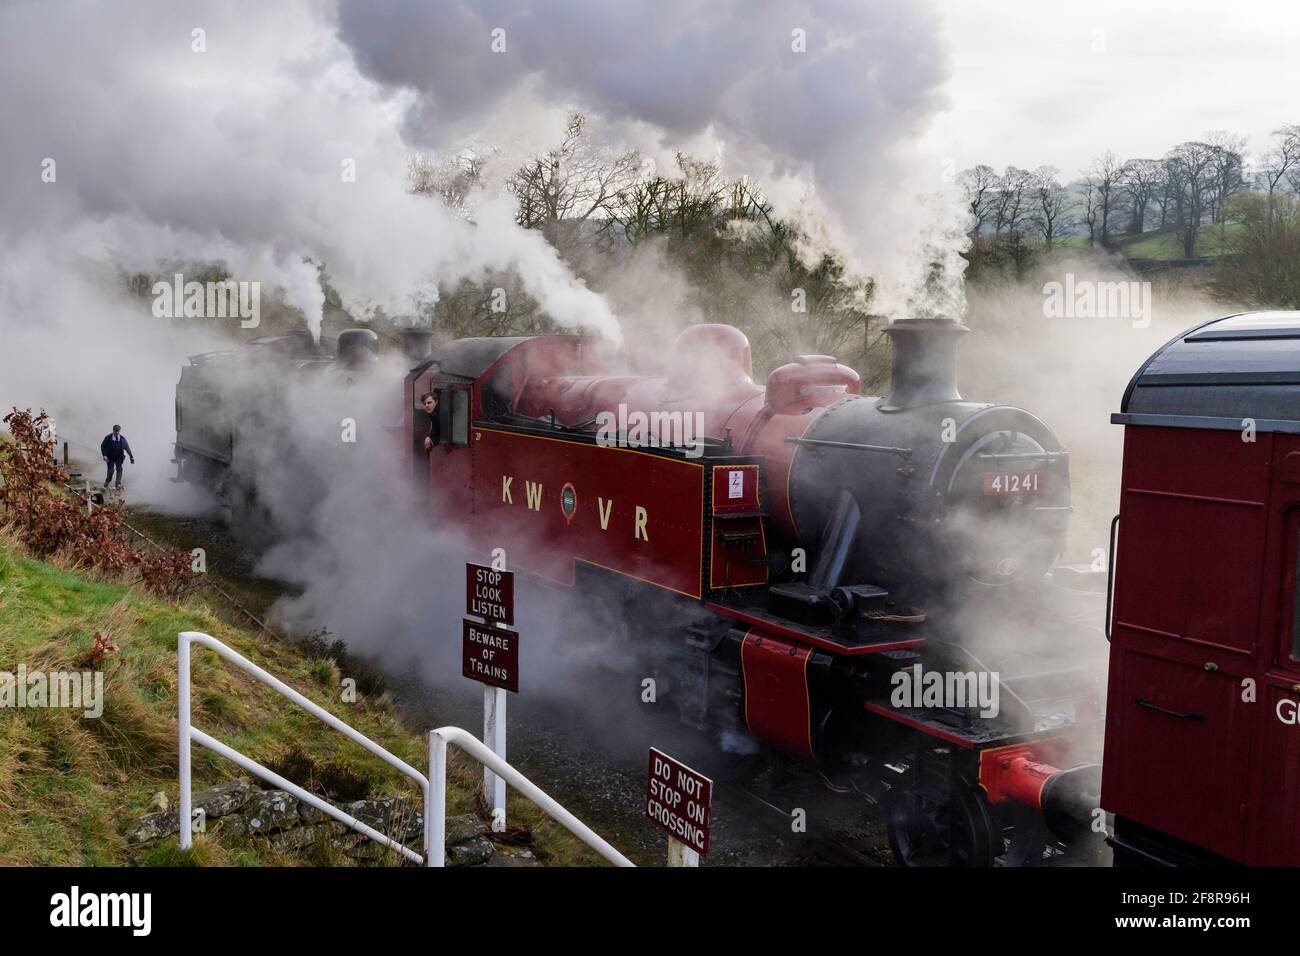 Los históricos trenes de vapor (locos) que soplaban nubes de humo dramáticas se detuvieron en el cruce (conductor de motor en taxi) - ferrocarril de herencia, KWVR, Yorkshire Inglaterra Reino Unido. Foto de stock